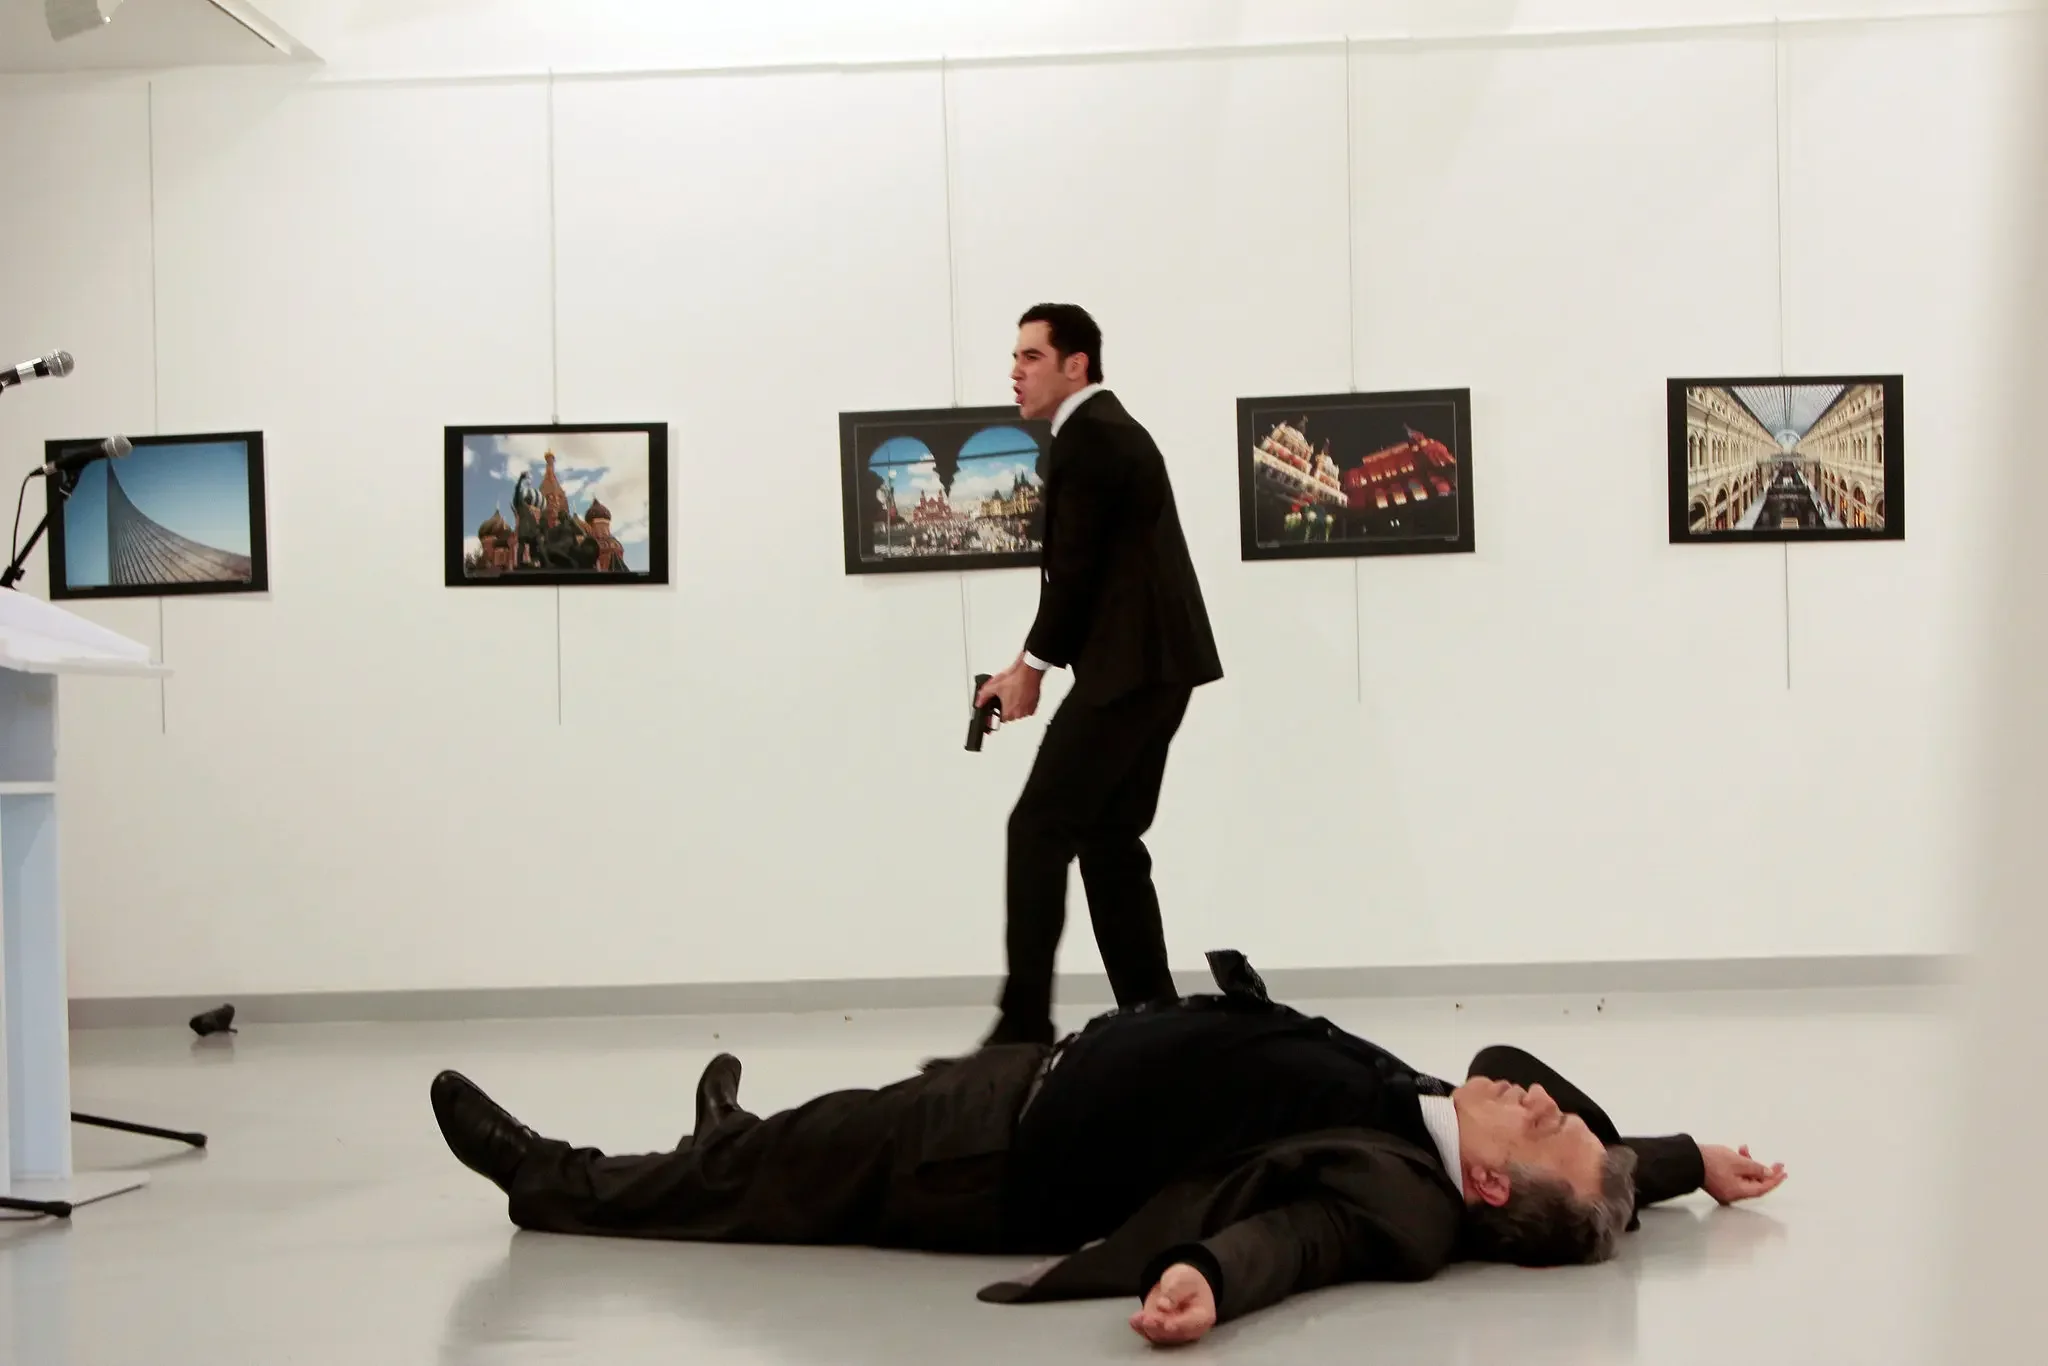 Mevlüt Mert Altıntaş grita después de dispararle al embajador ruso Andrey Karlov, en una galería de arte en Ankara.